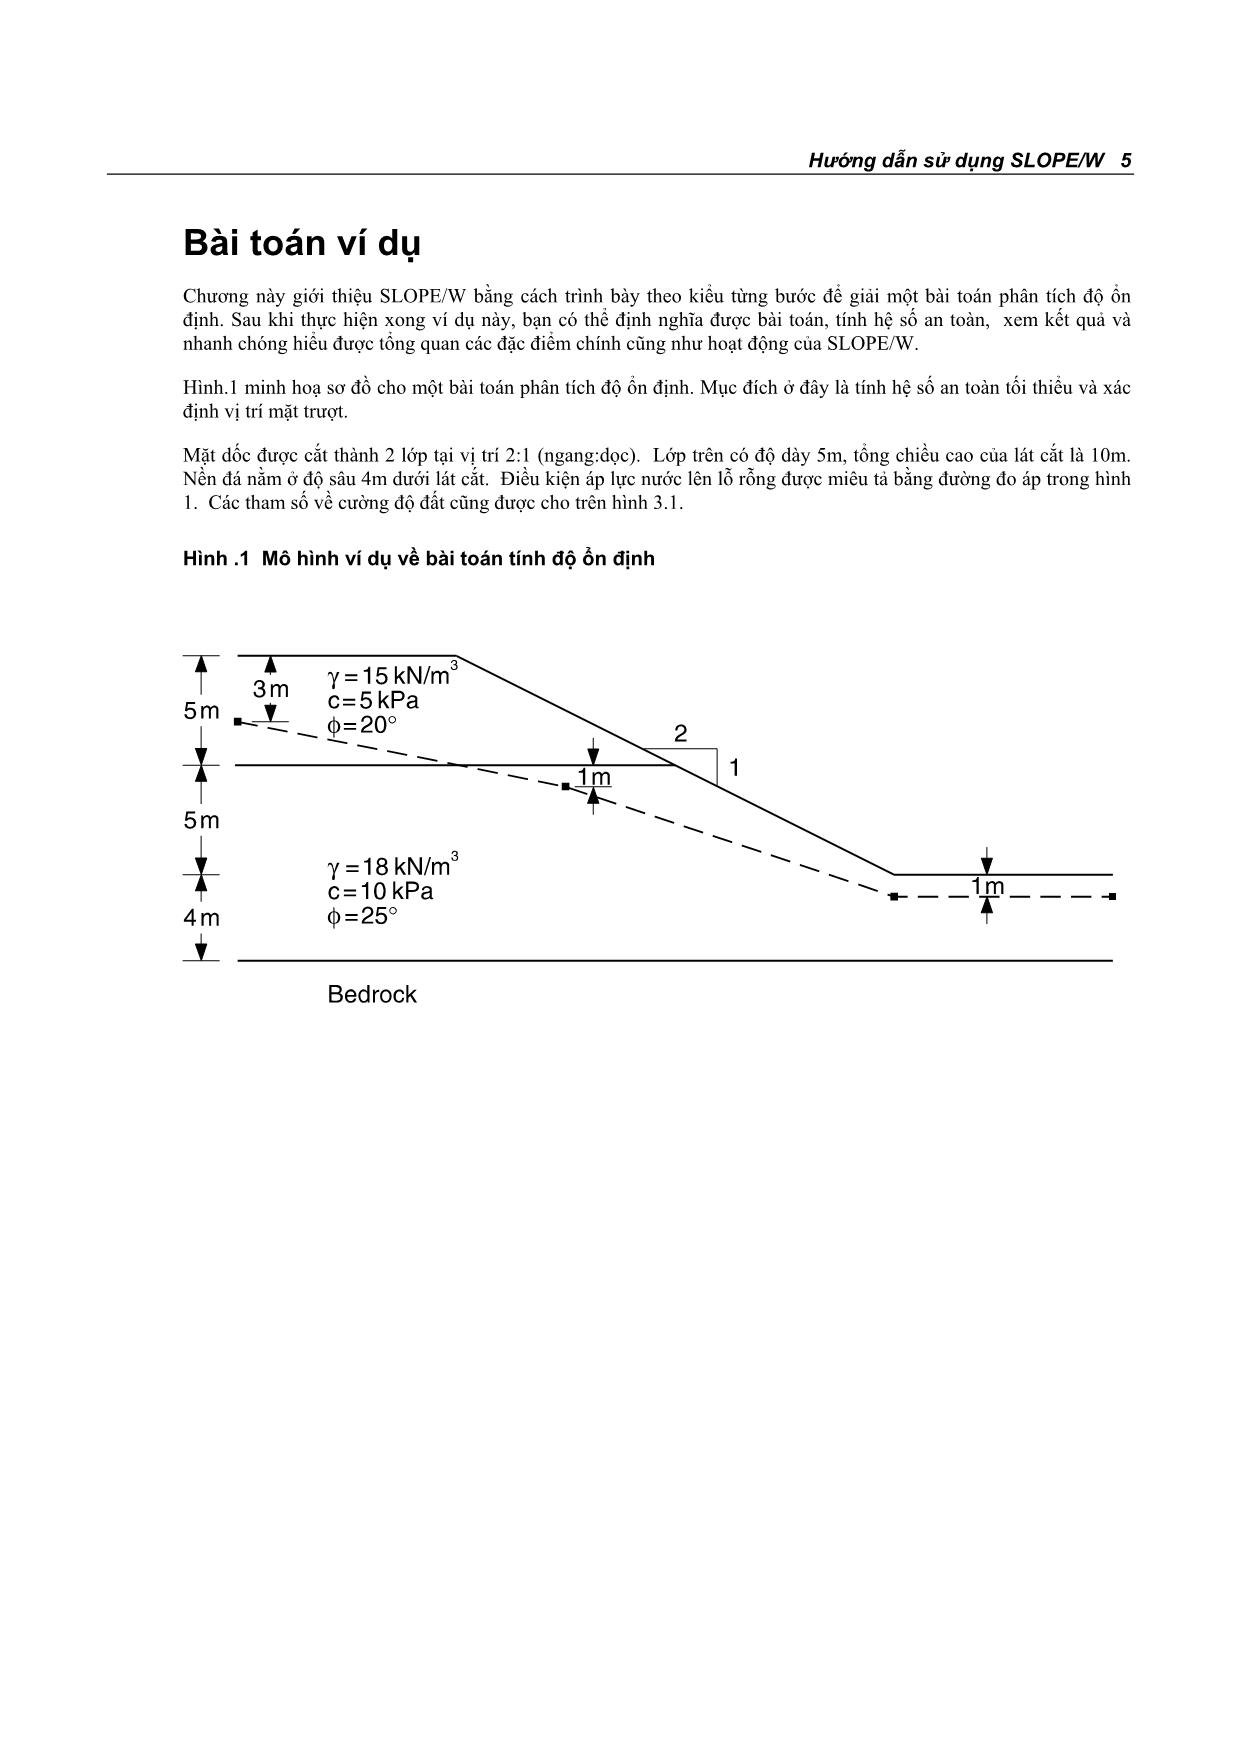 Hướng dẫn sử dụng phần mềm tính ổn định mái dốc Slope/W trang 5